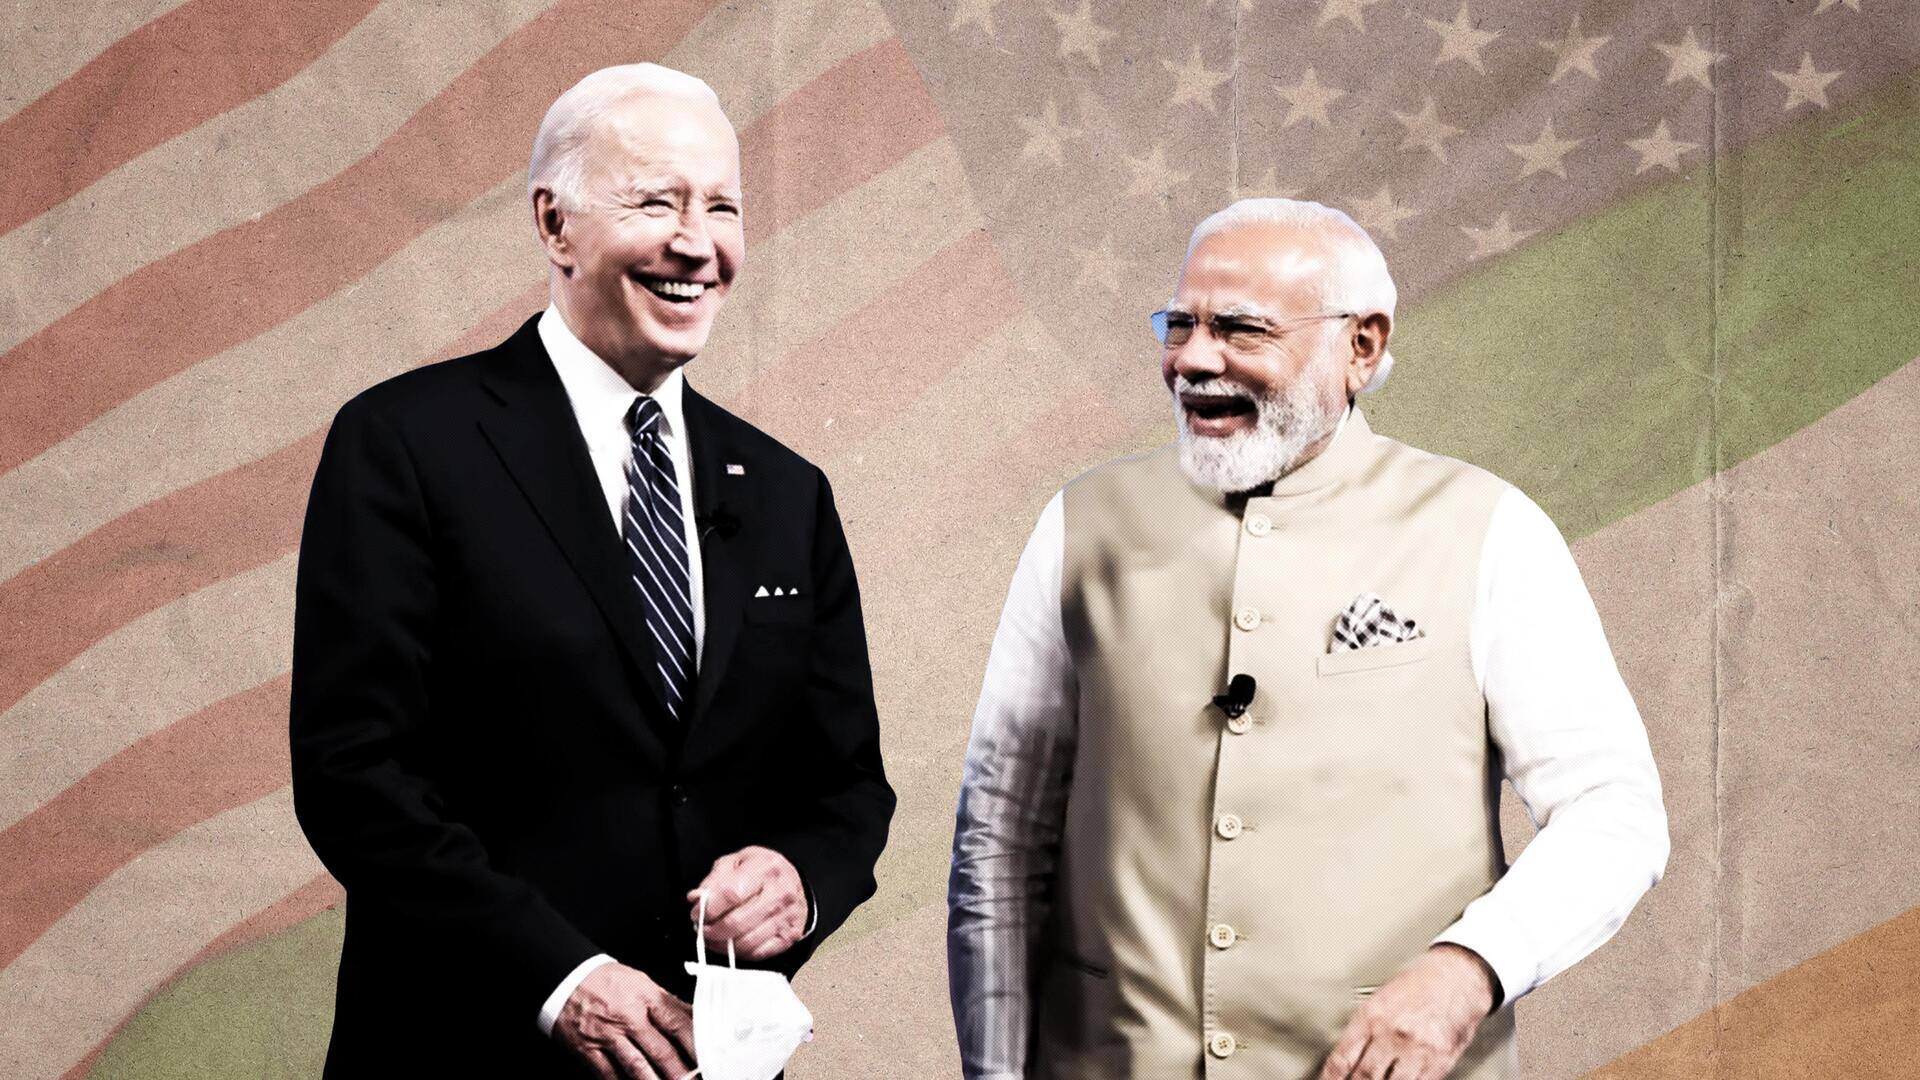 प्रधानमंत्री मोदी के दौरे से पहले अमेरिका का भारत के लोकतंत्र पर बड़ा बयान, क्या कहा?